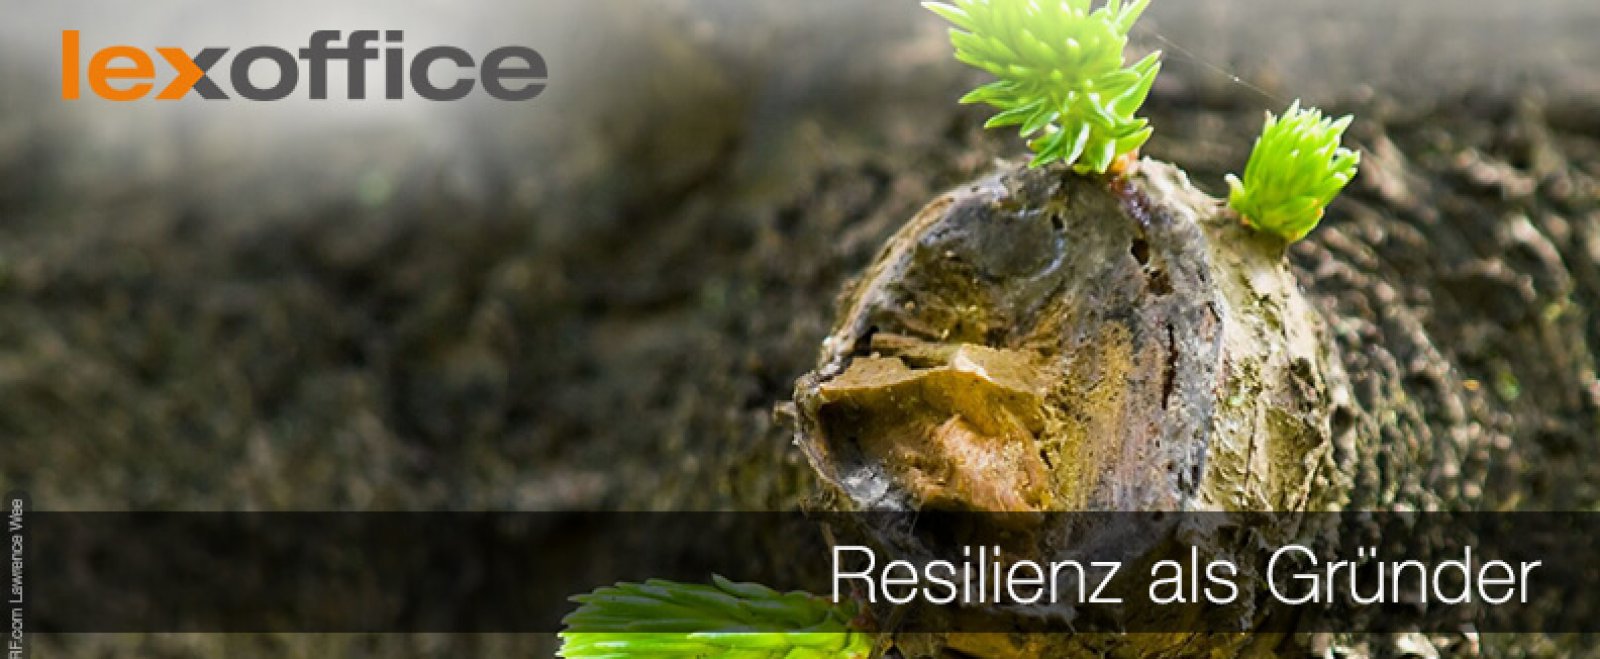 Resilienz als Gründer: Durchhalten für den Erfolg ist angesagt